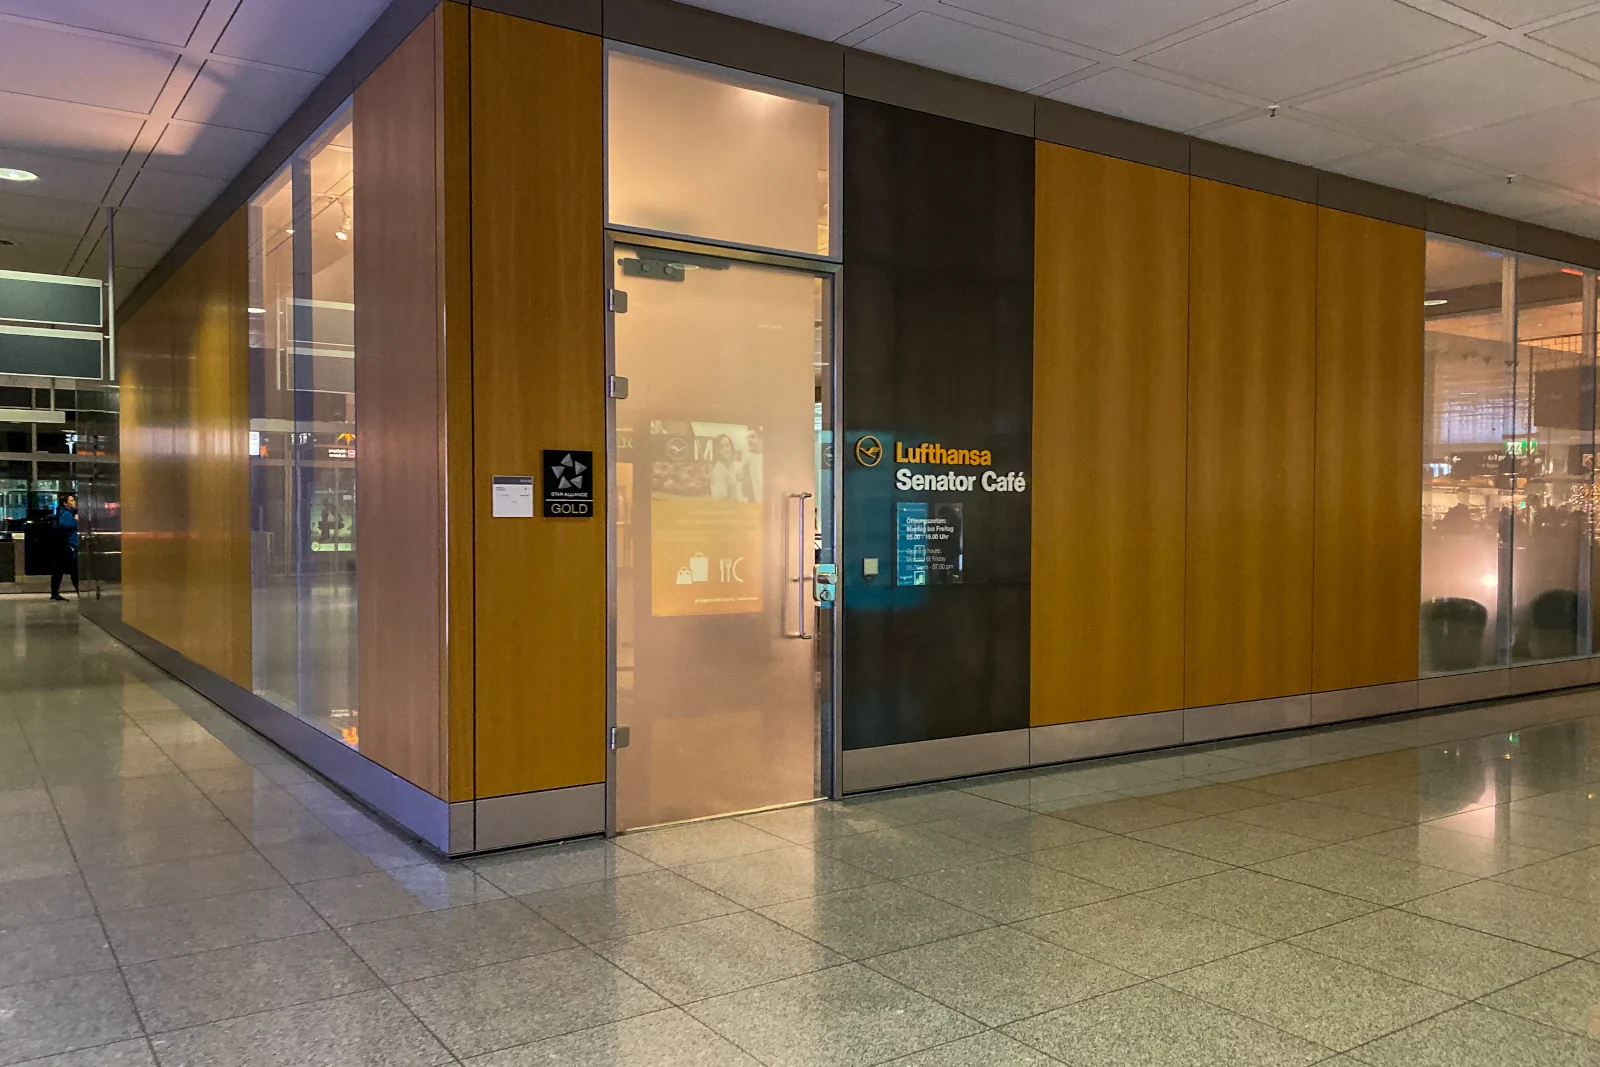 Eingang des Lufthansa Senator Cafe am Flughafen München Terminal 2 in der Nähe von Gate G27 / G28